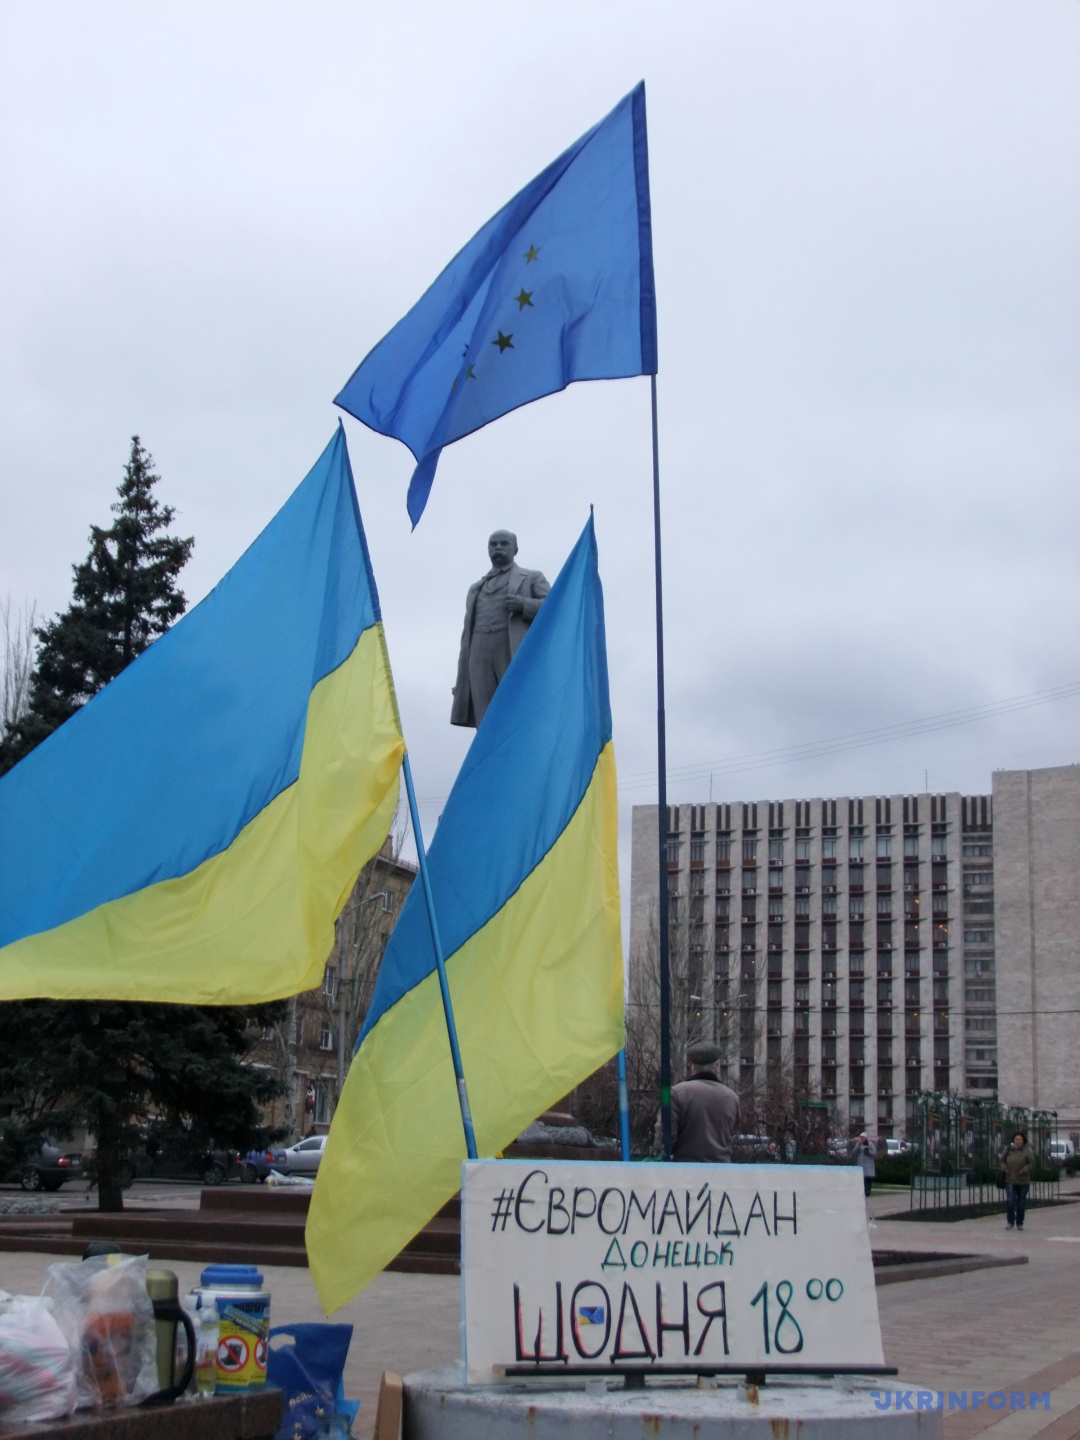 Прапори України і ЄС біля пам’ятника Тарасу Шевченку, де триває акція на підтримку євроінтеграції, в Донецьку, 27 листопада 2013 року. / Фото: Юлій Зозуля